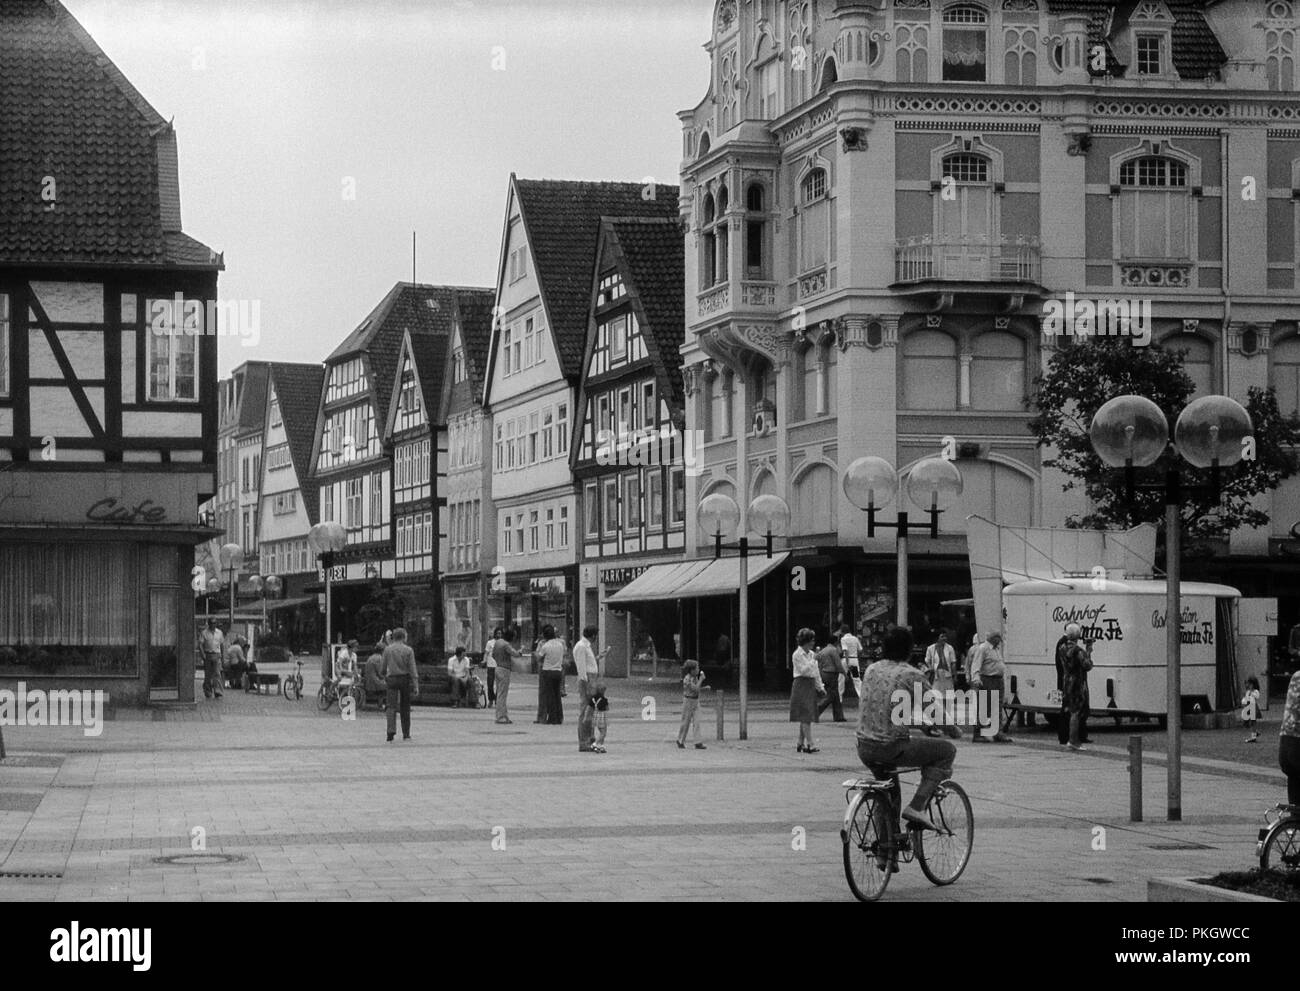 Marktplatz, Detmold, Nordrhein-Westfalen, Deutschland. Ursprüngliches 1970er-Archivbild Stockfoto